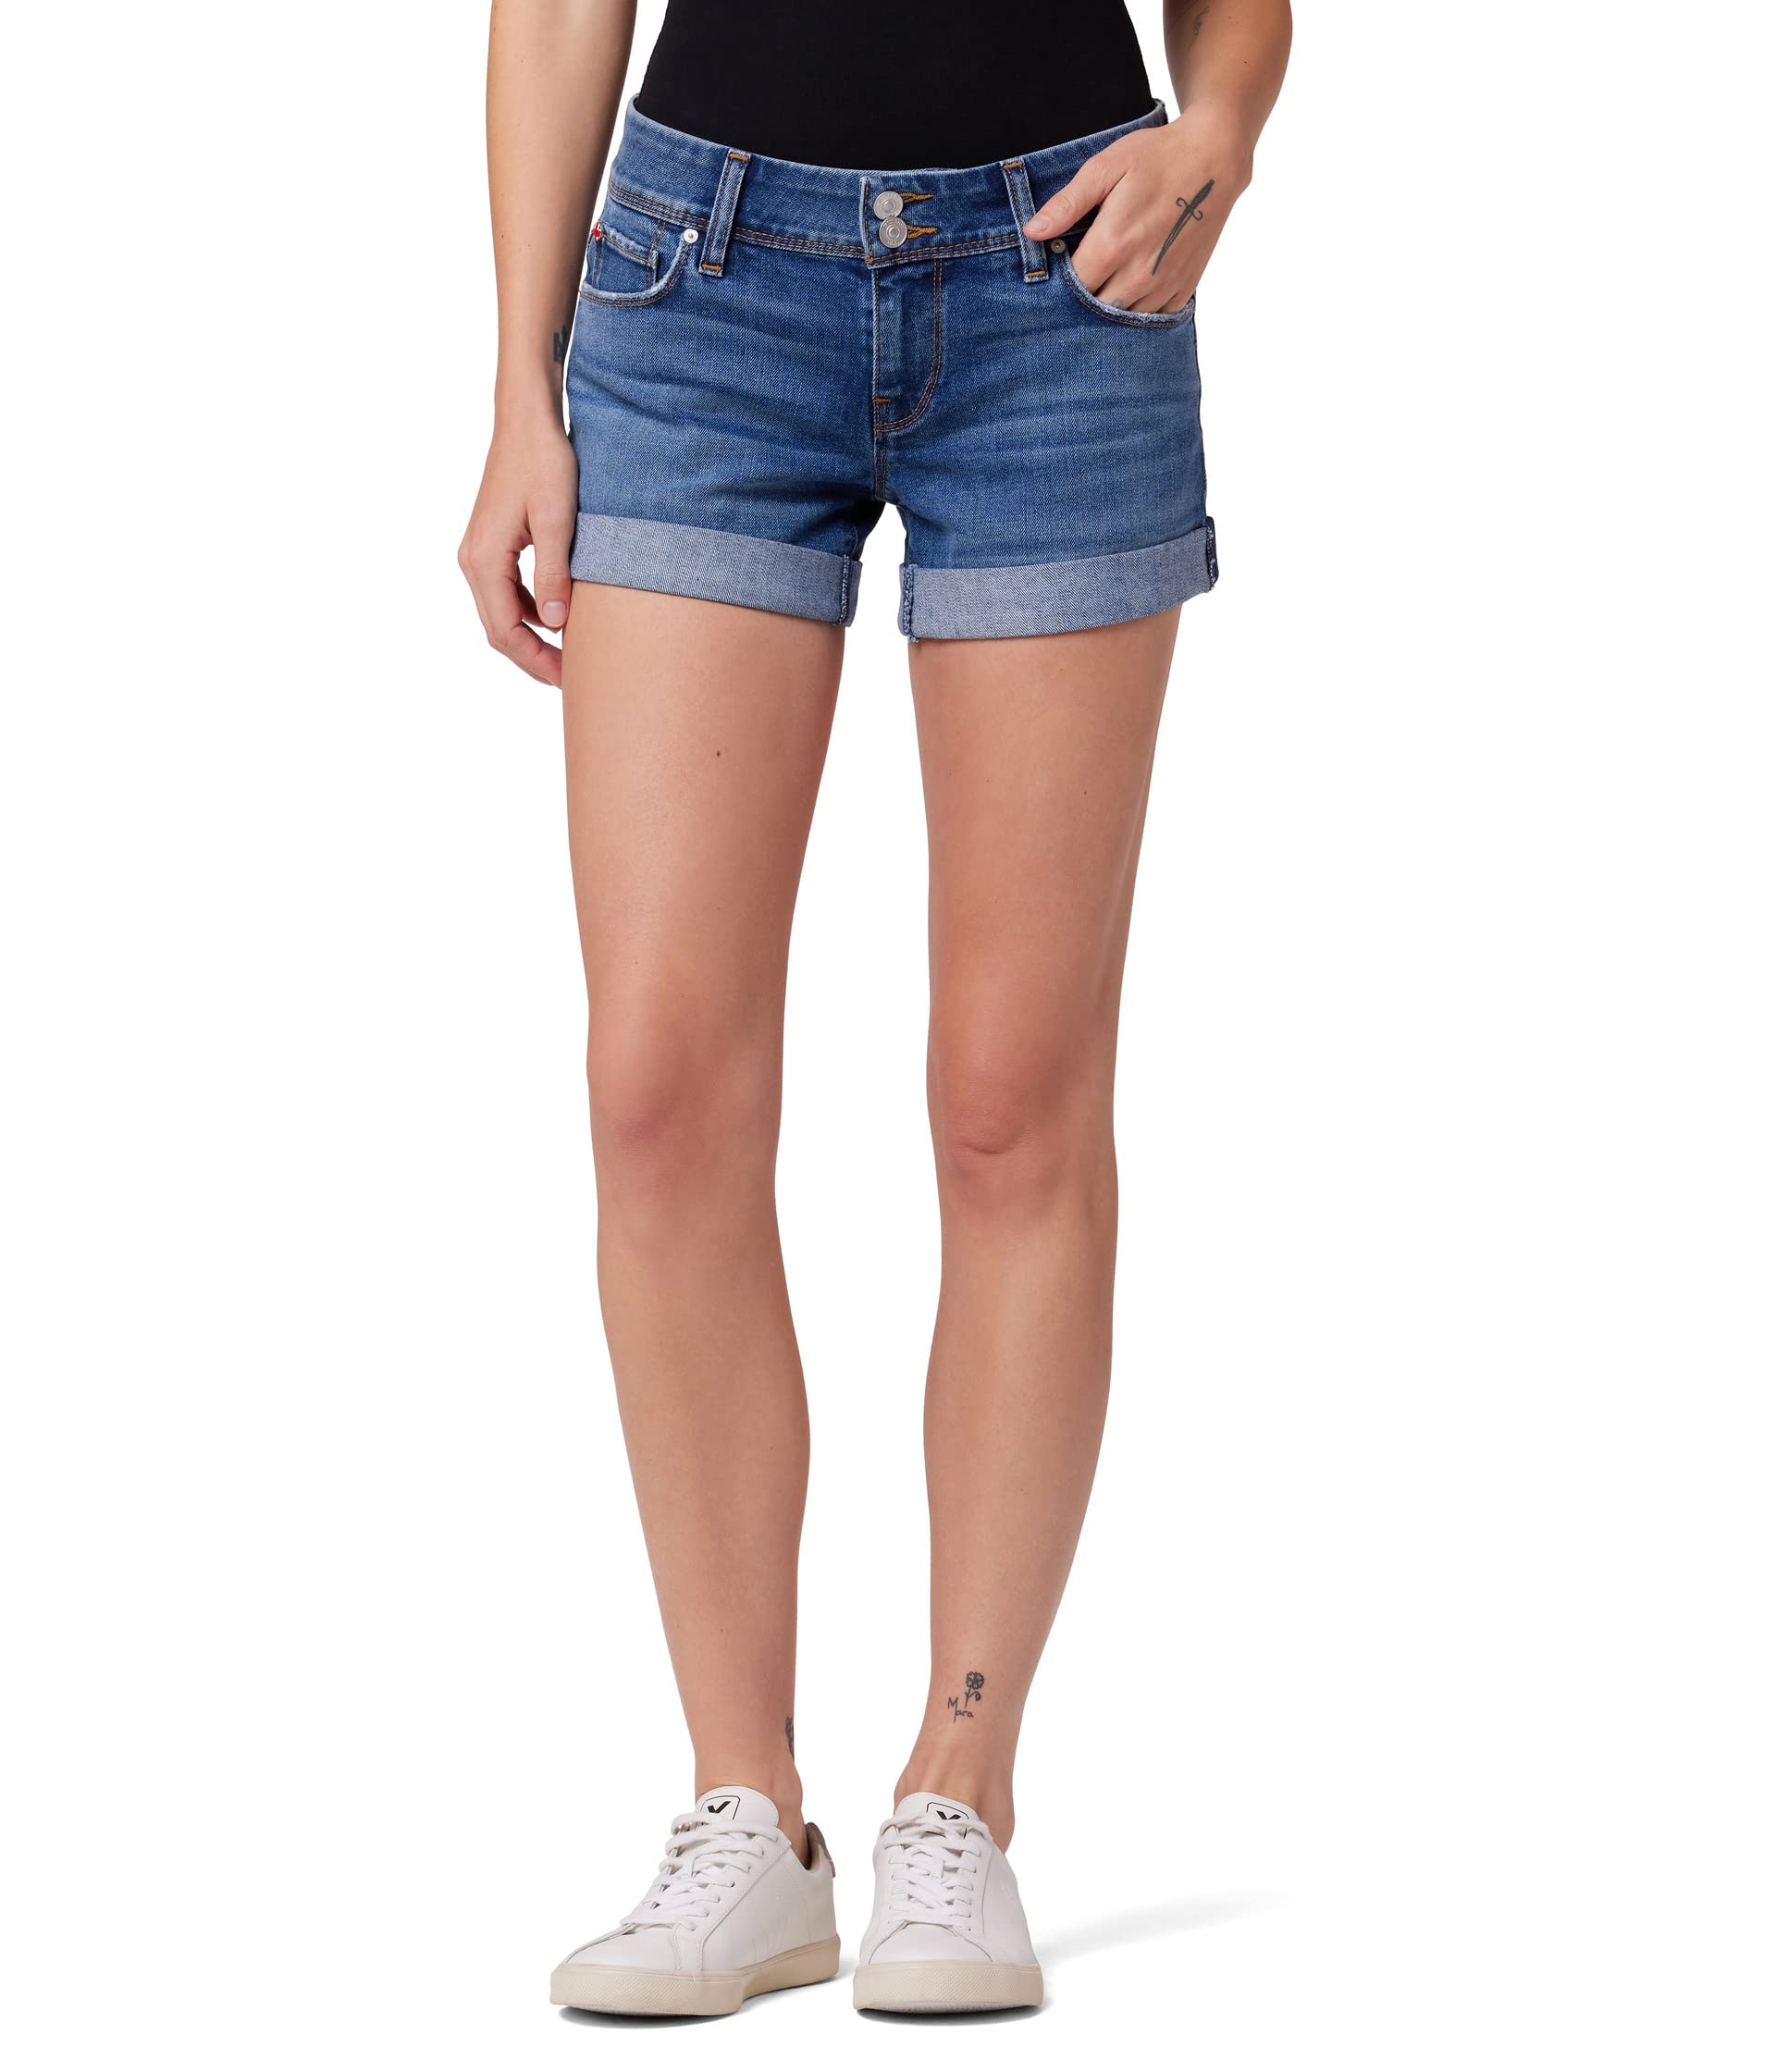 Шорты Hudson Jeans, Croxley Midthigh Shorts (w/ Rolled Hem) in Echo Of Light шорты hudson jeans croxley cuffed shorts in white белый